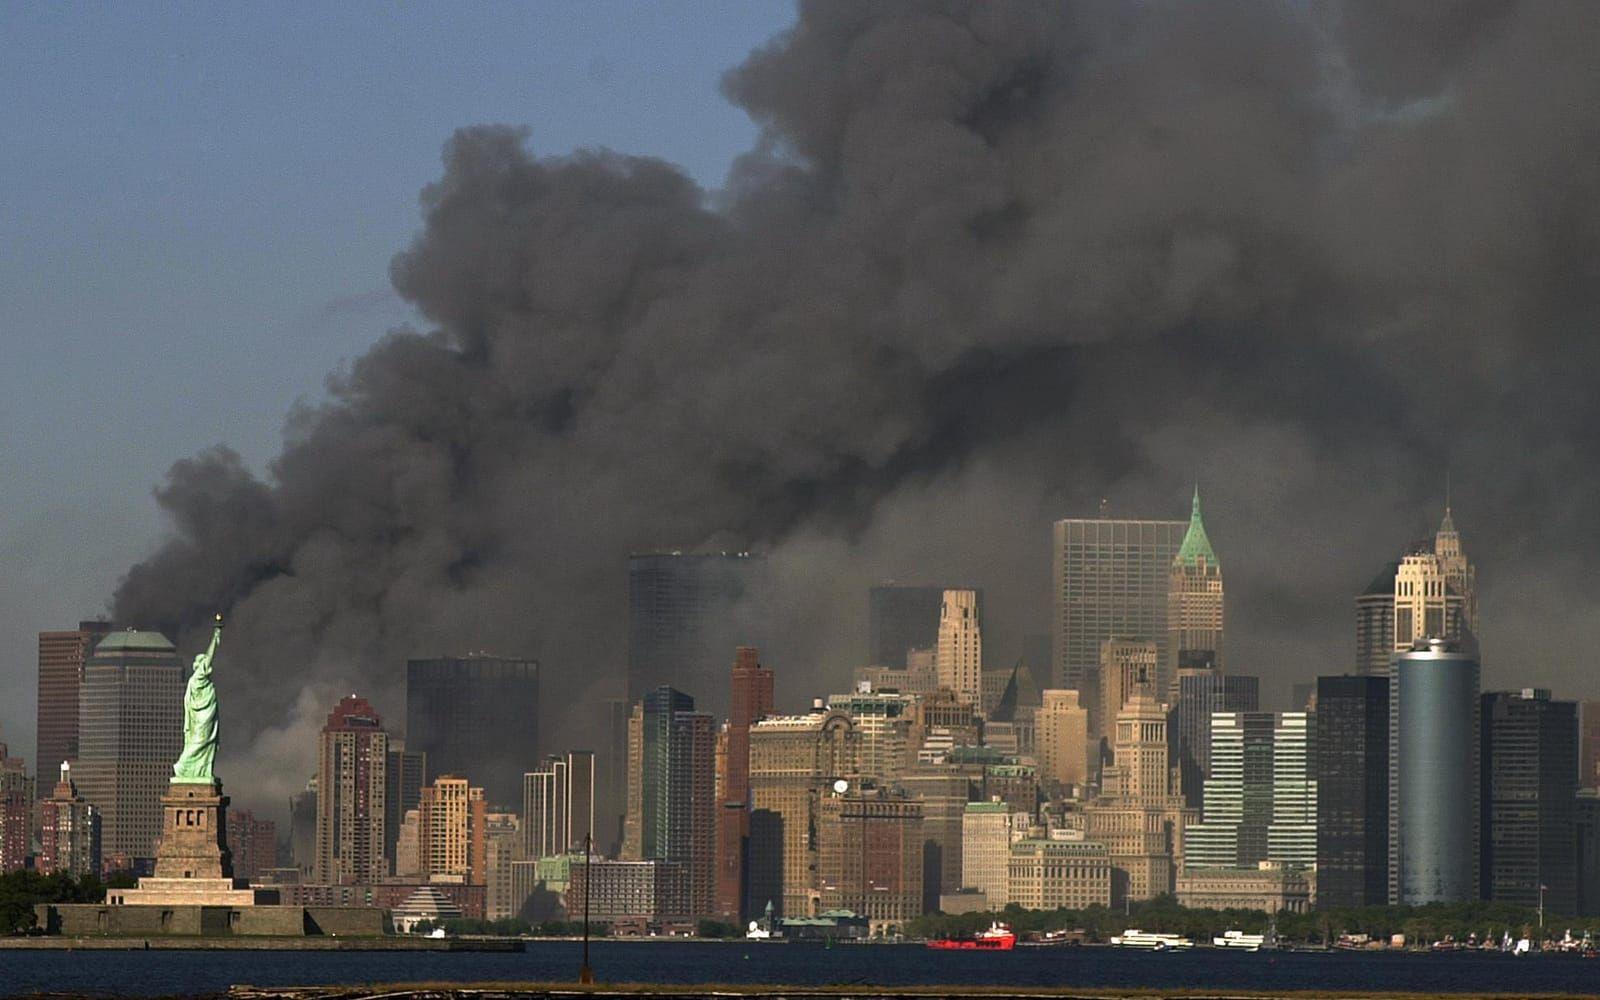 I samband med stora katastrofer, som attacken mot World trade center i New York, upplever många att andra människor får panik. Foto: TT